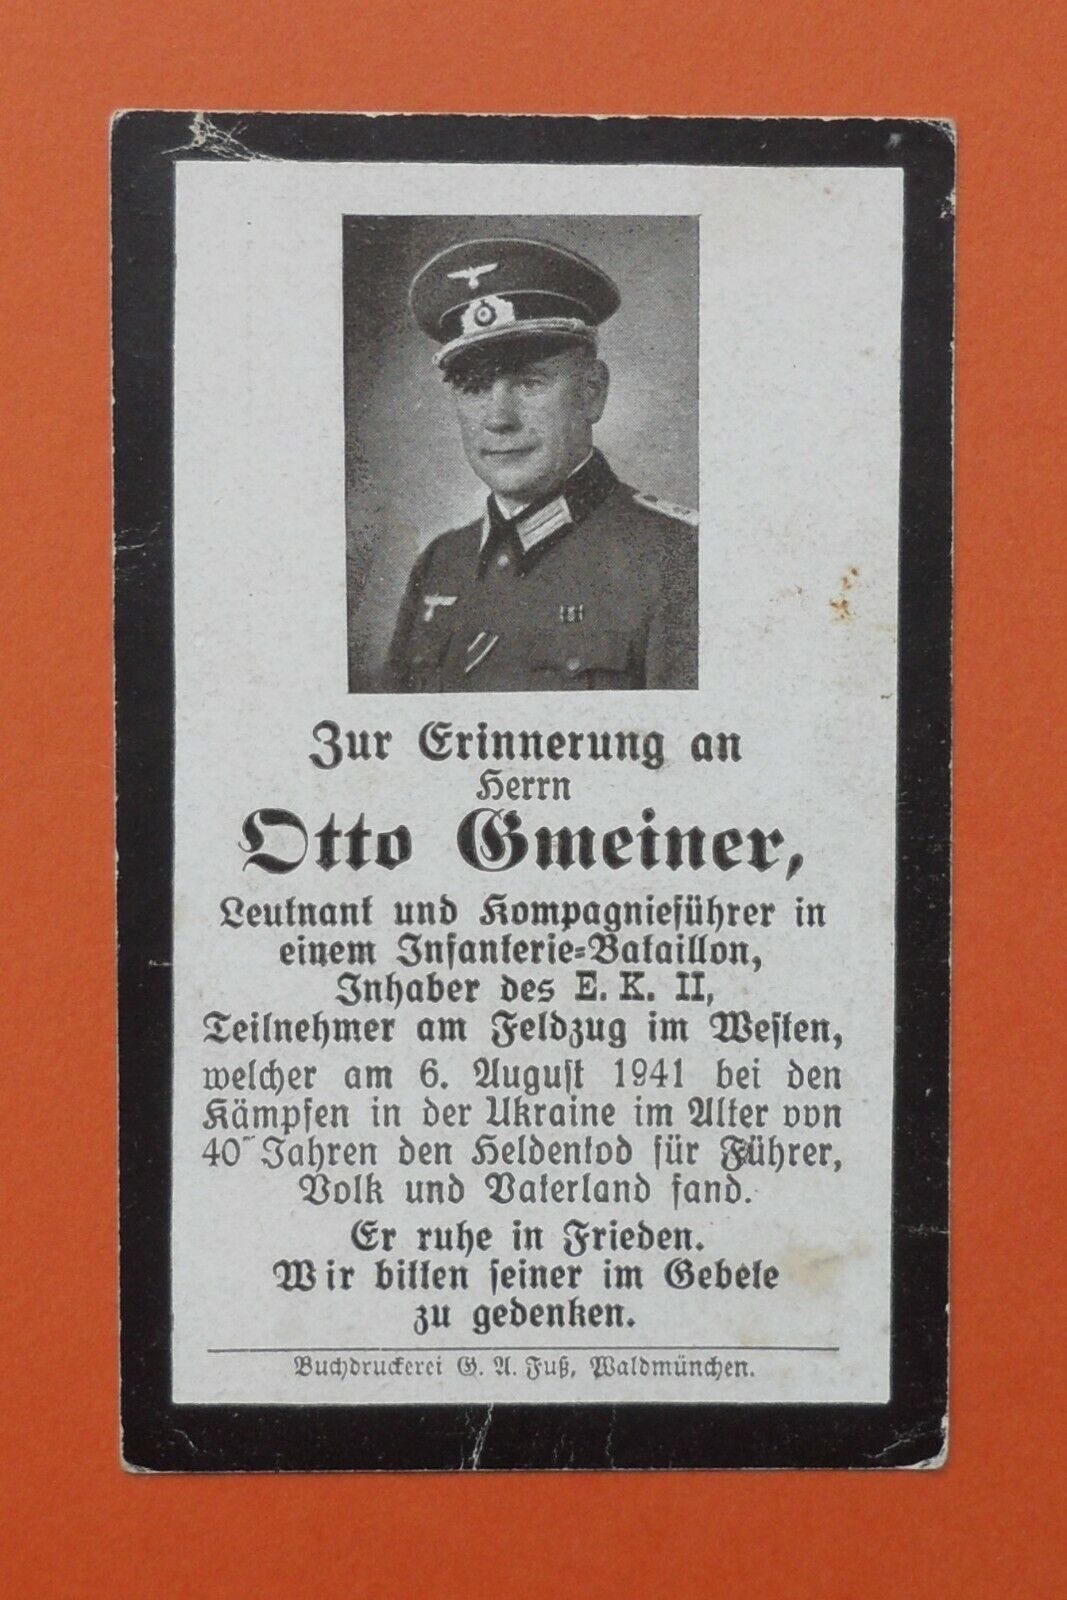 WW2 German Death Card Sterbebild Officer & Company Commander EK2 Ukraine 1941